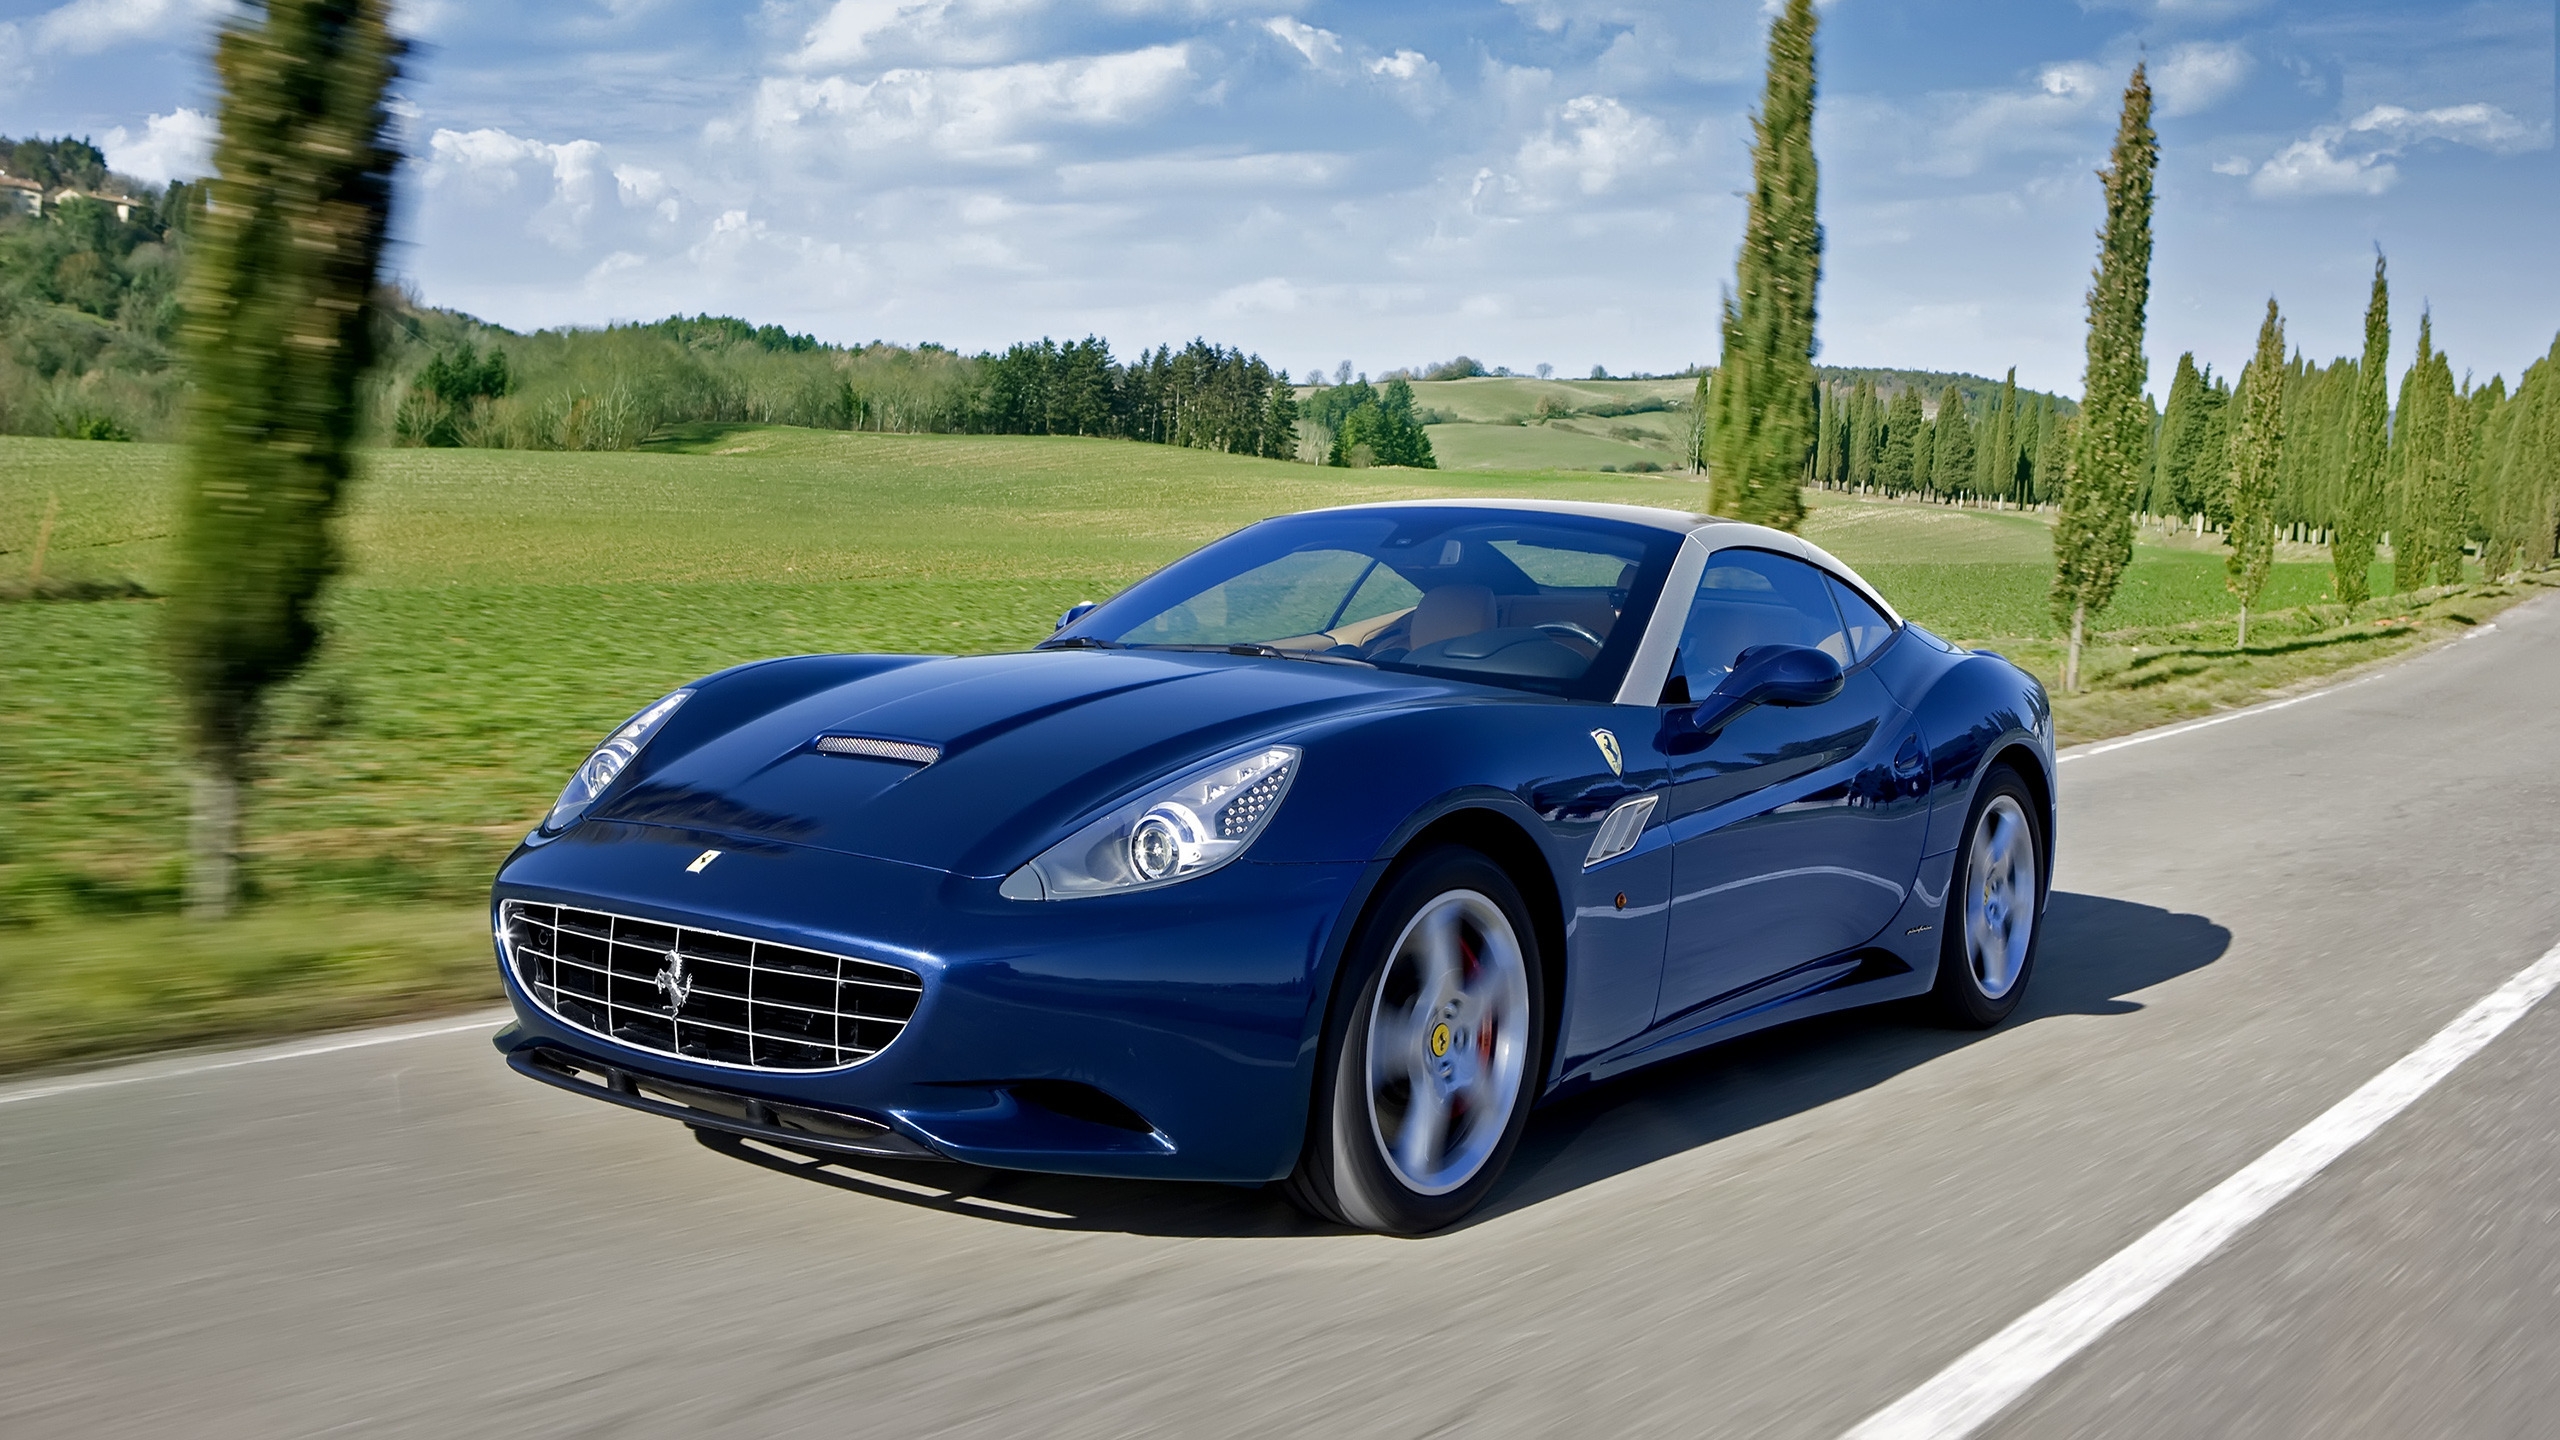 Blue Ferrari California for 2560x1440 HDTV resolution